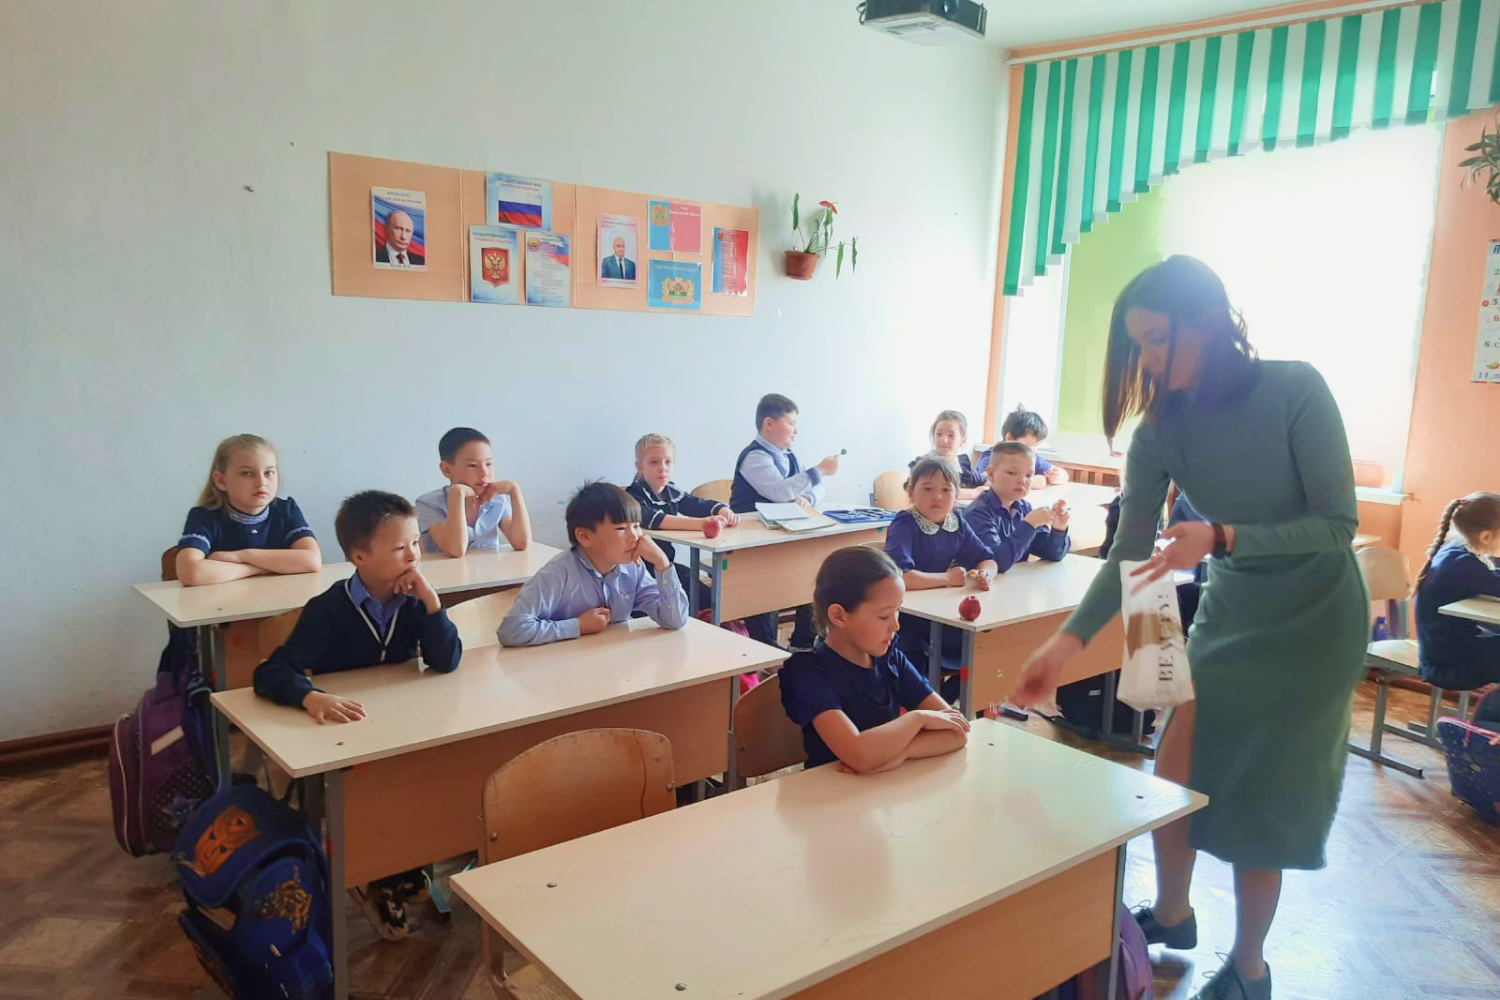 Экологи разреза Шестаки провели урок на тему охраны окружающей среды для школьников поселка Беково. Стройсервис